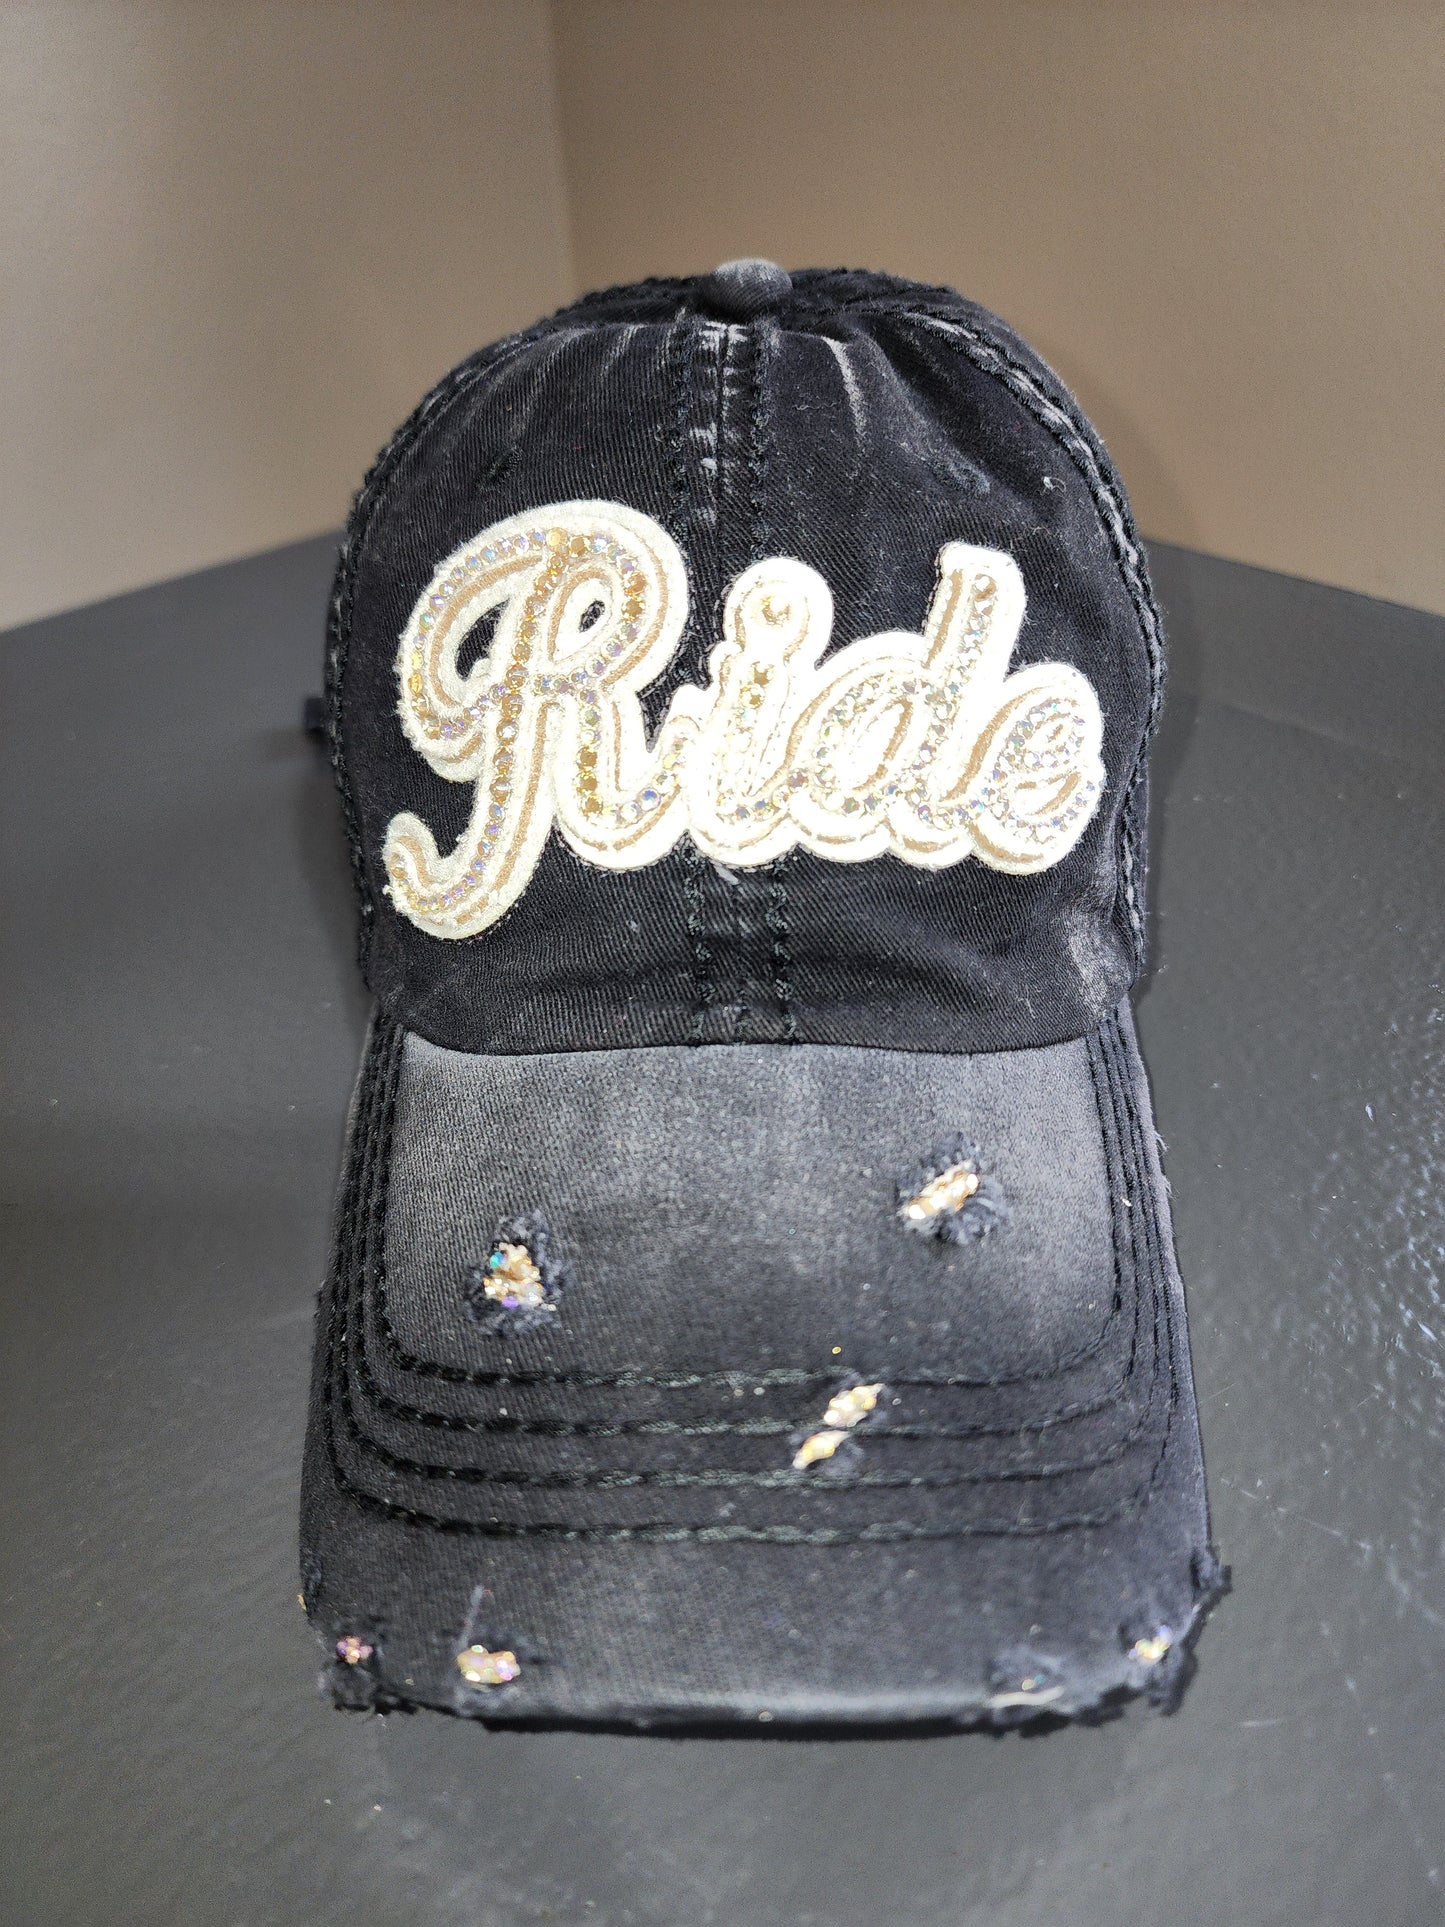 Custom Bling "RIDE" baseball cap